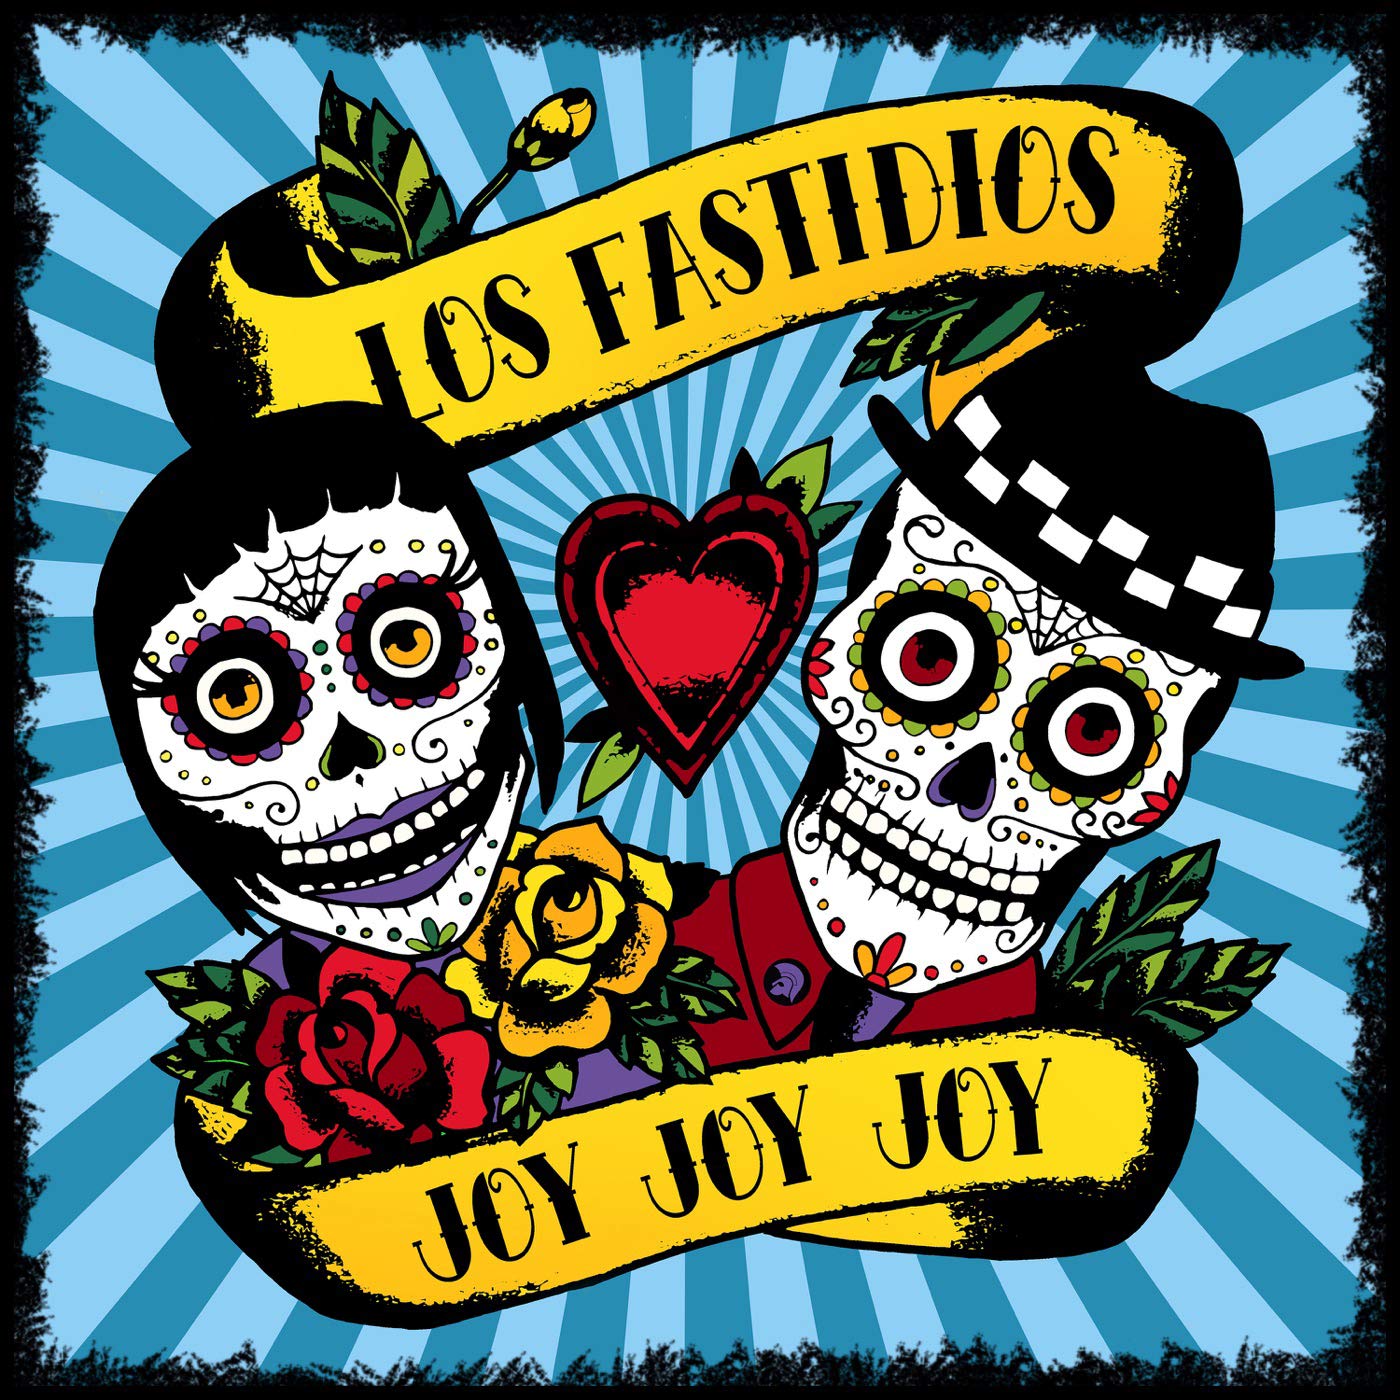 LOS FASTIDIOS "Joy joy joy" - CD